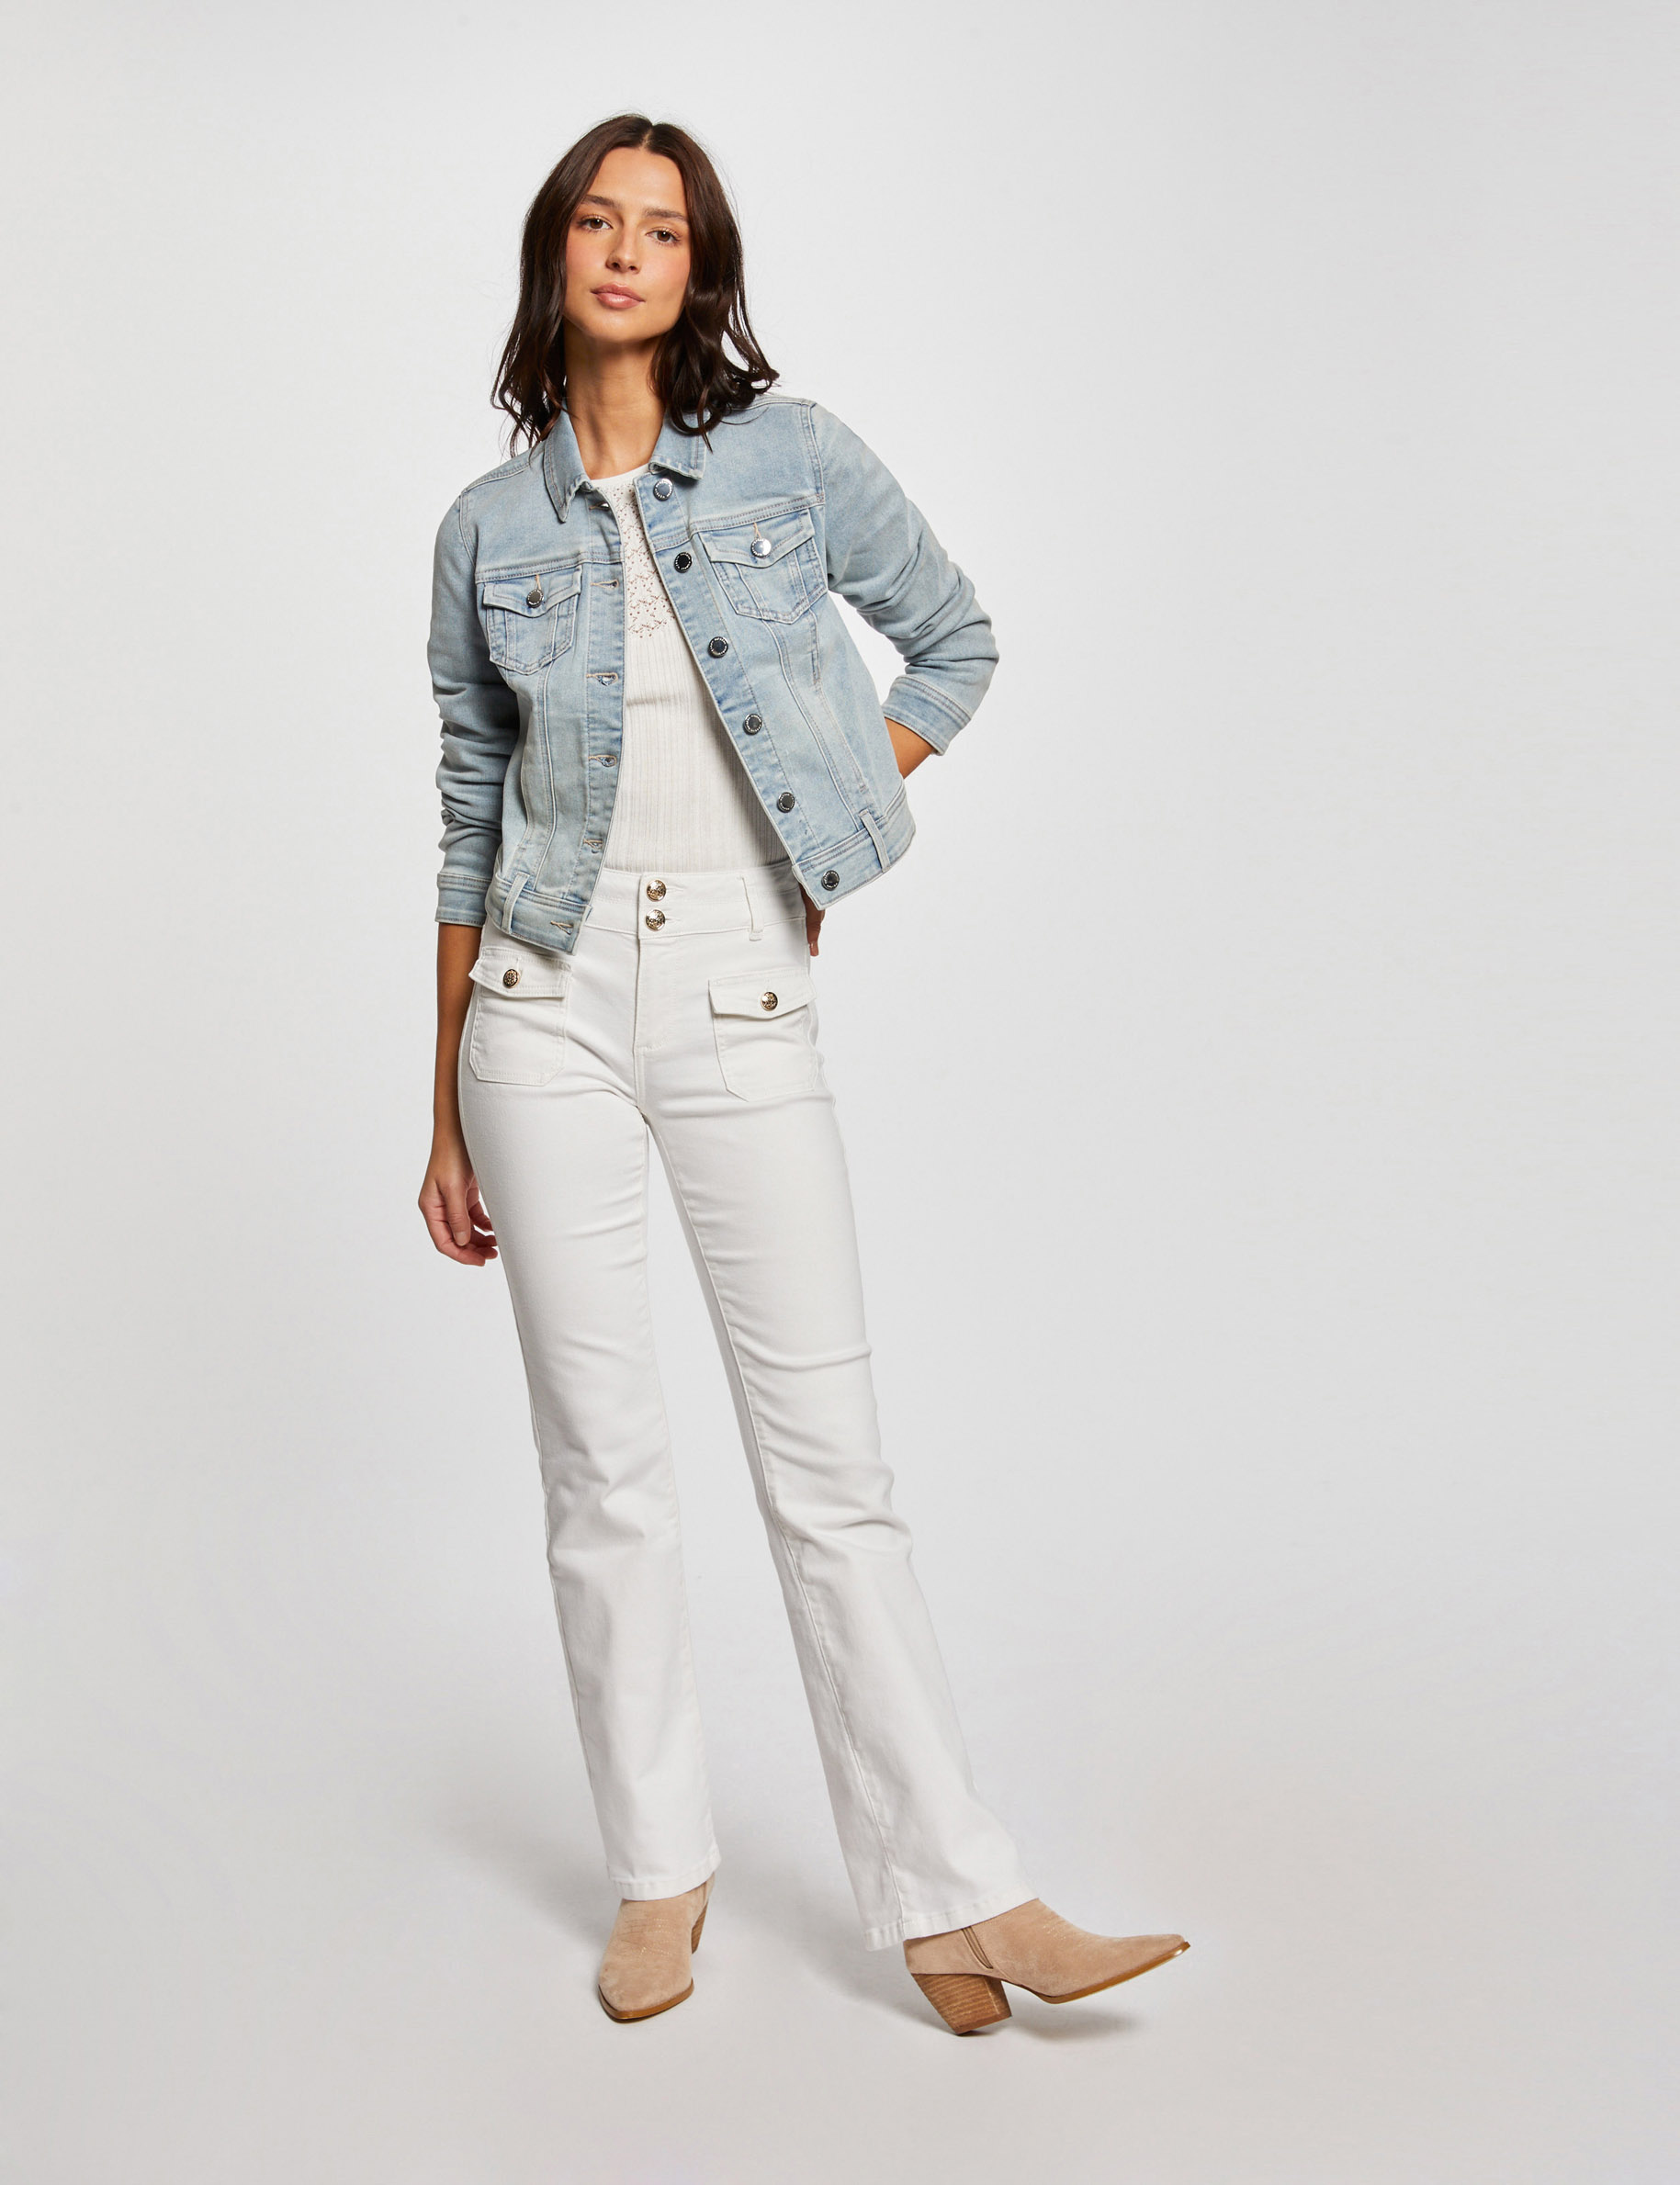 Veste droite boutonnée en jean jean bleached femme